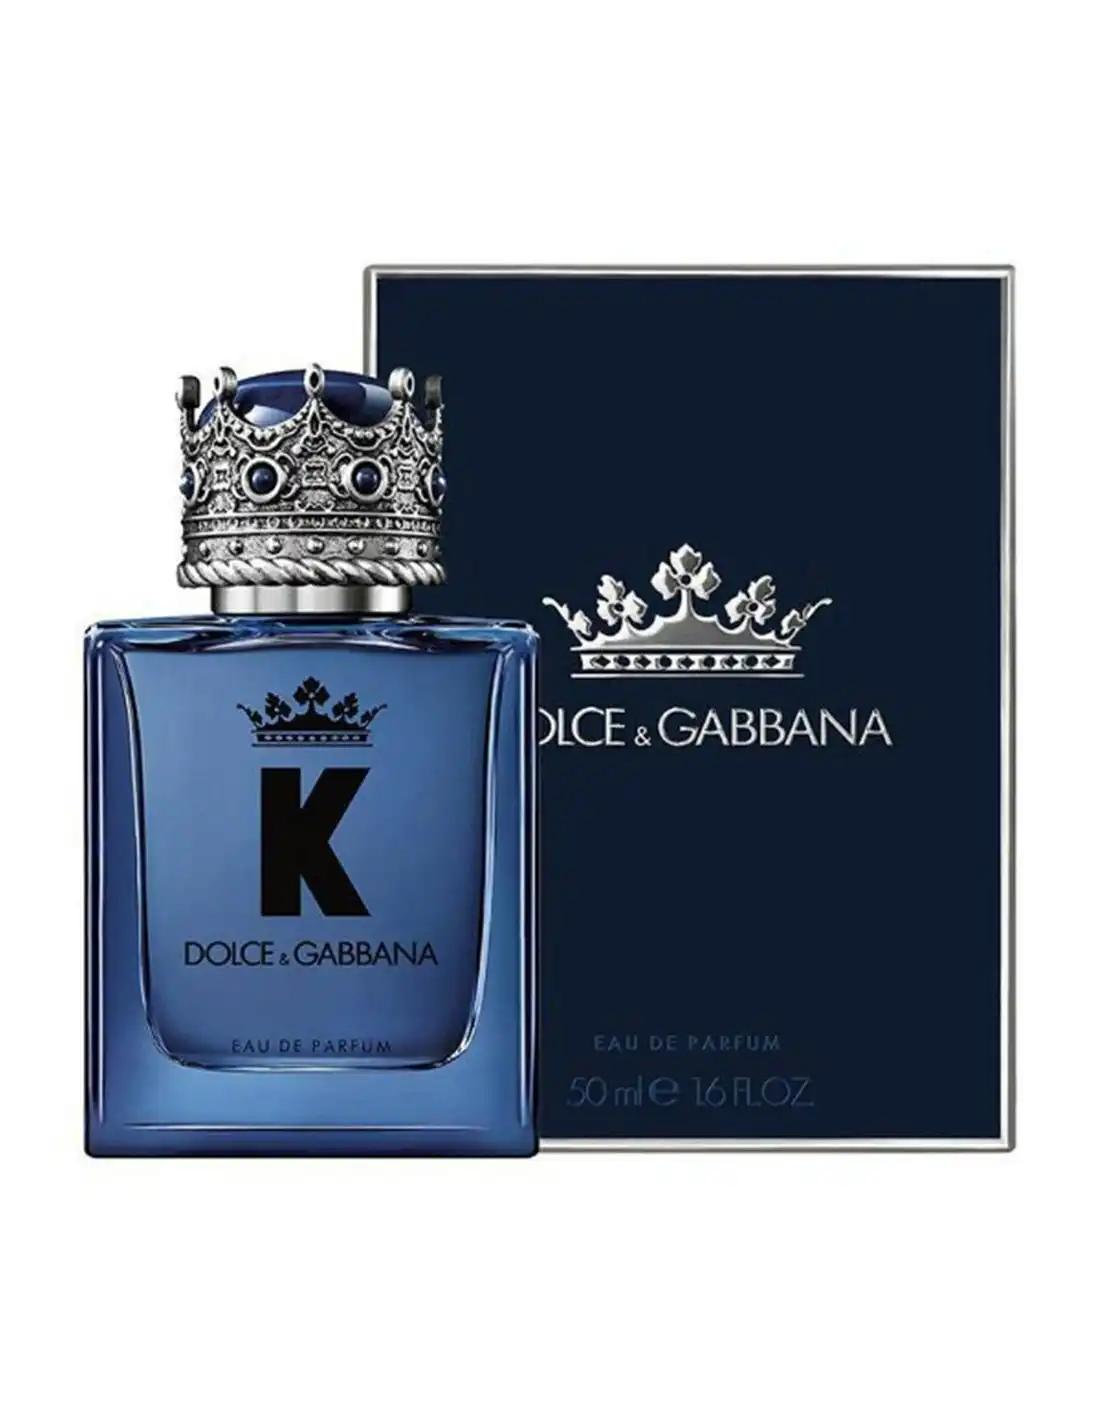 K by Dolce & Gabbana EDP Spray 50ml For Men